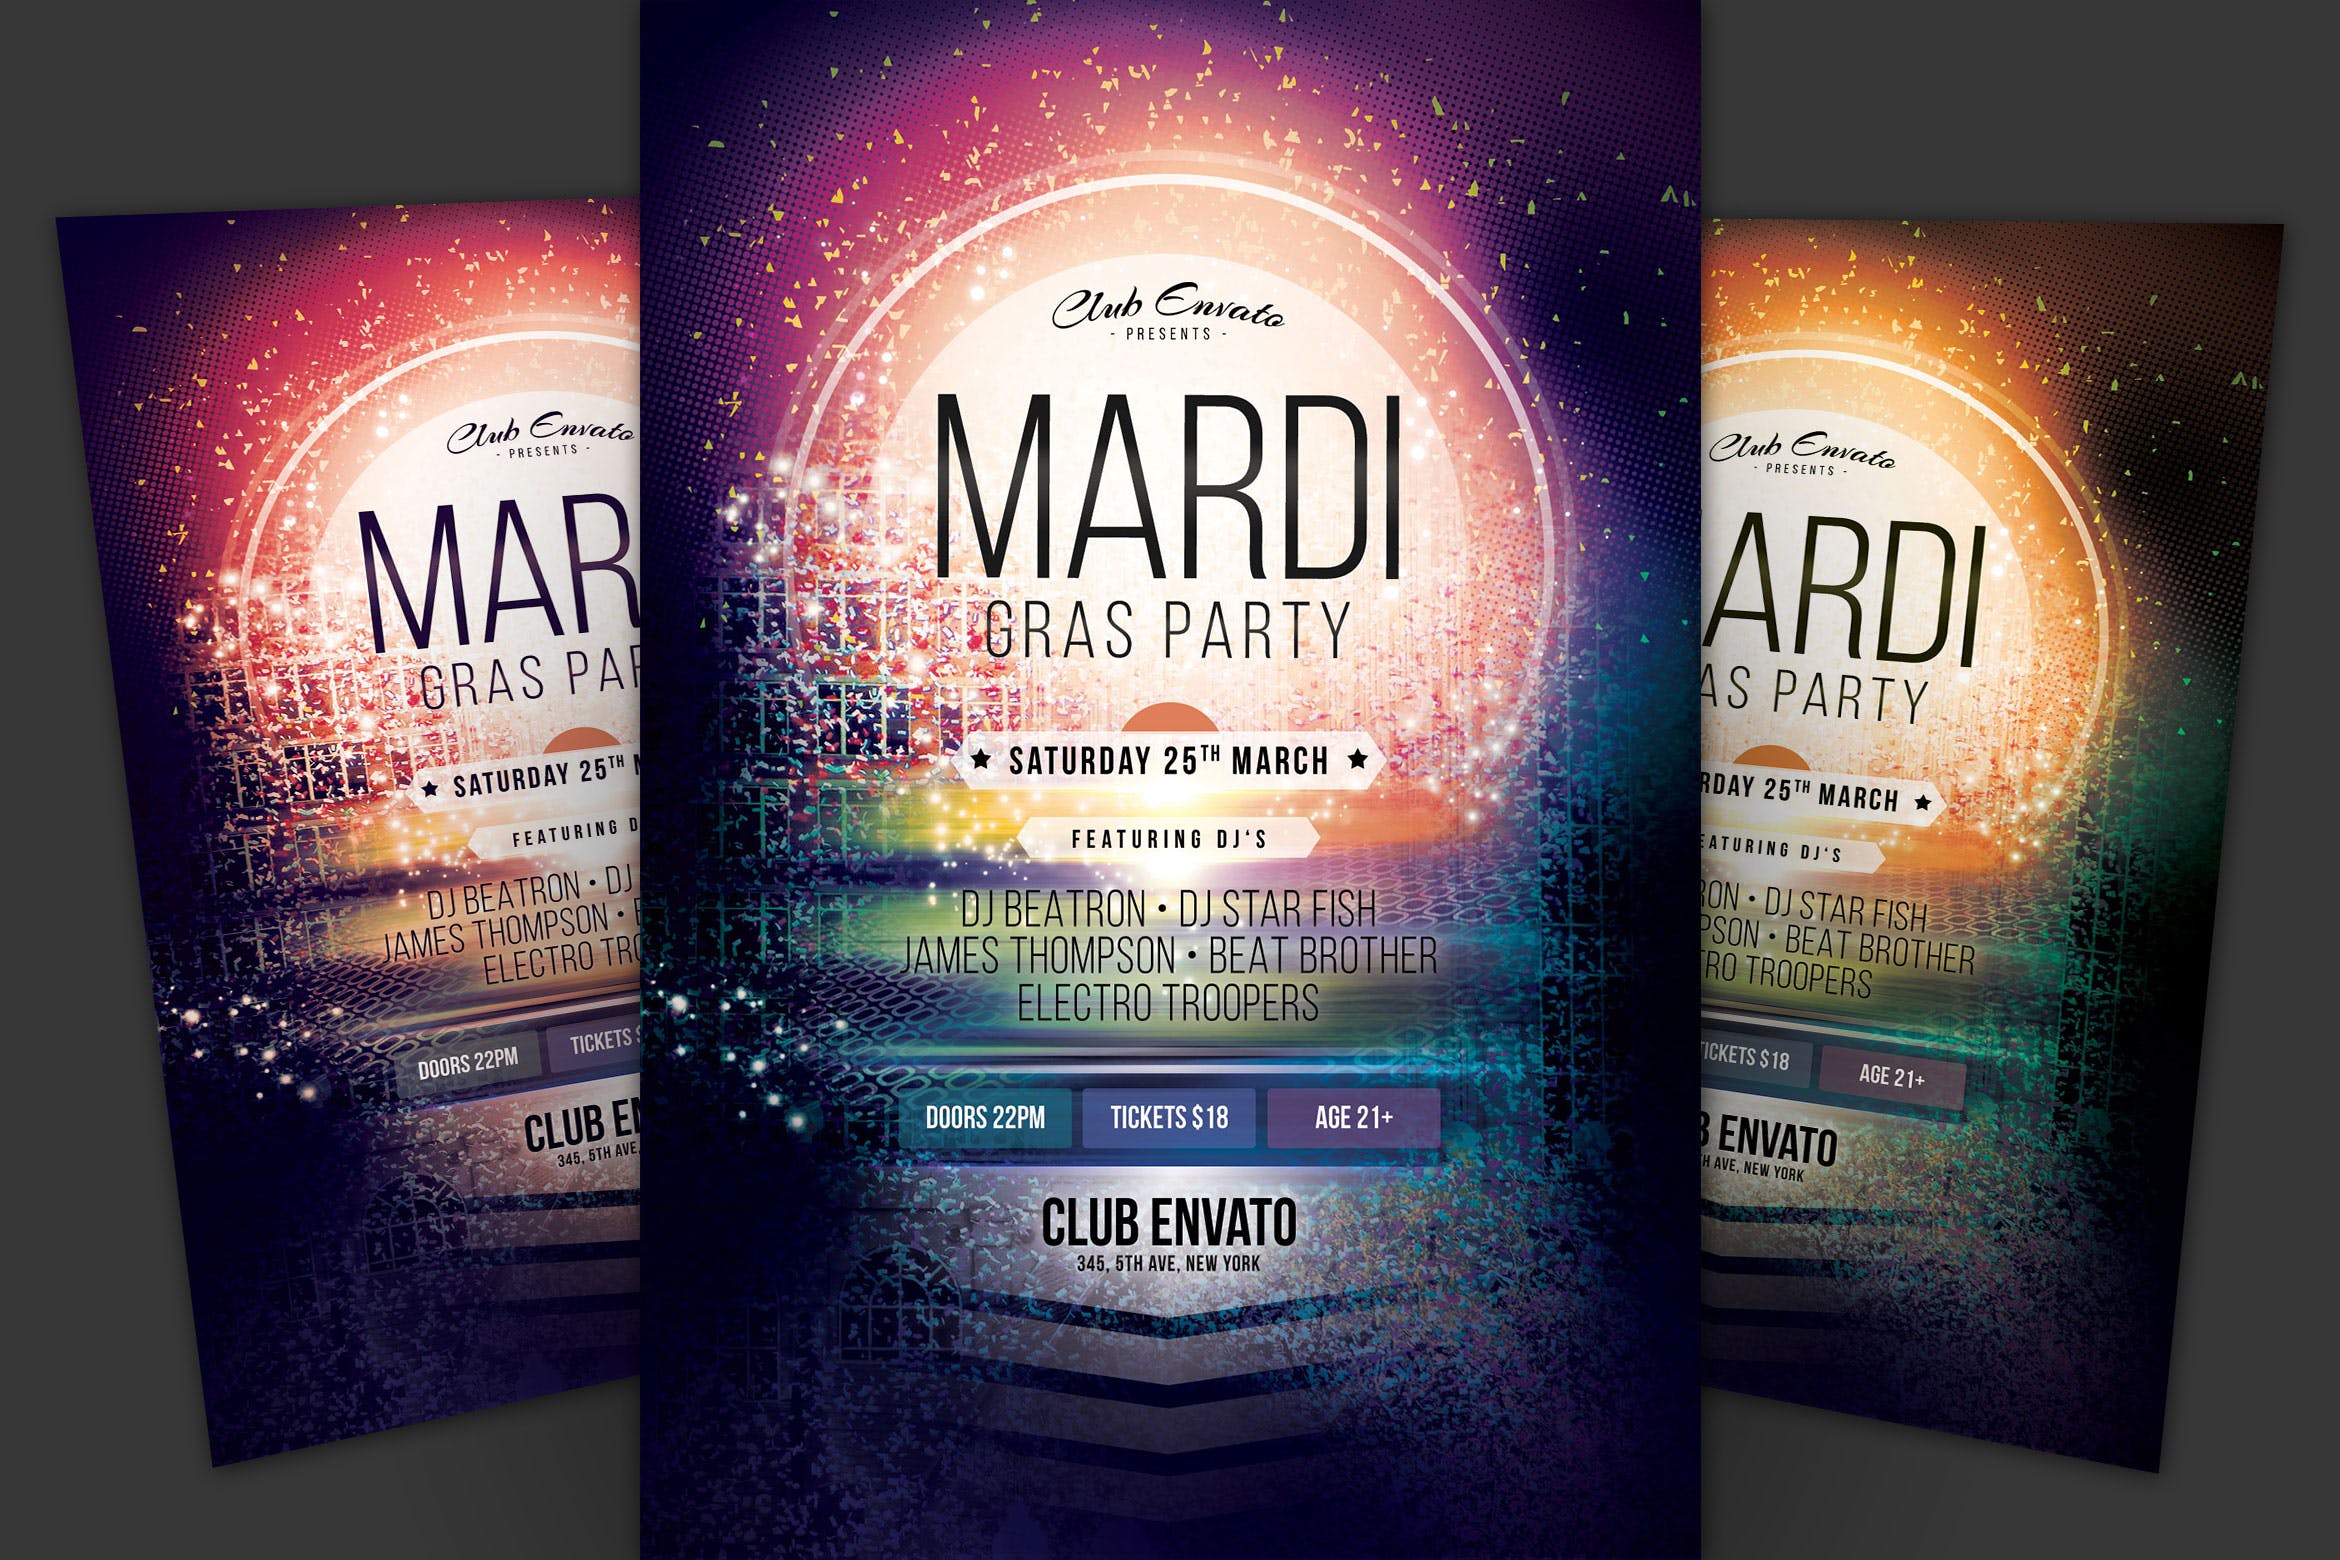 狂欢节庆祝活动海报传单16图库精选PSD模板 Mardi Gras Party Flyer插图